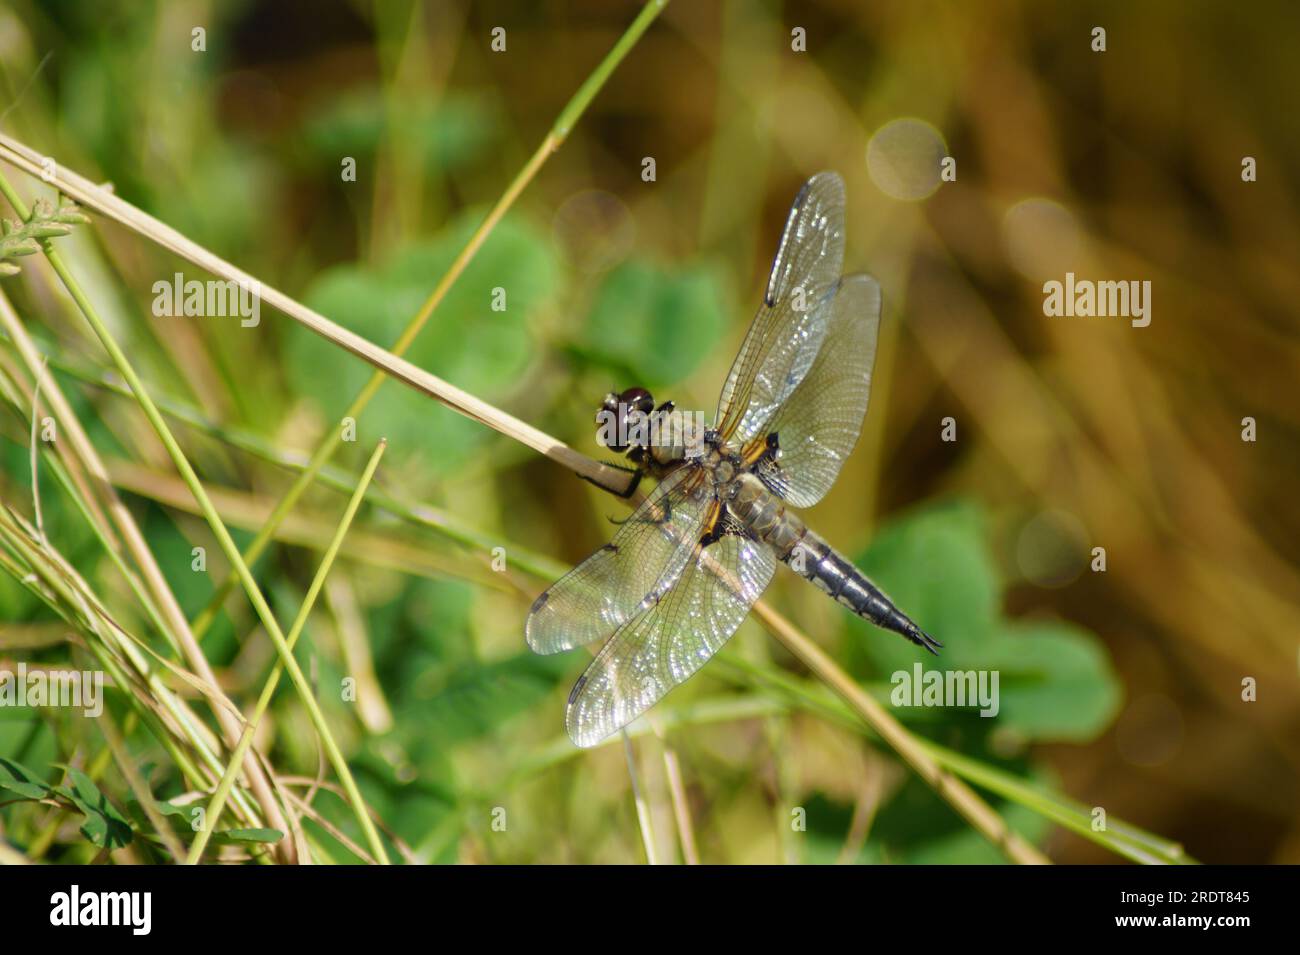 La libellula quadrimaculata a quattro maculata si prende il sole su una lama d'erba Foto Stock